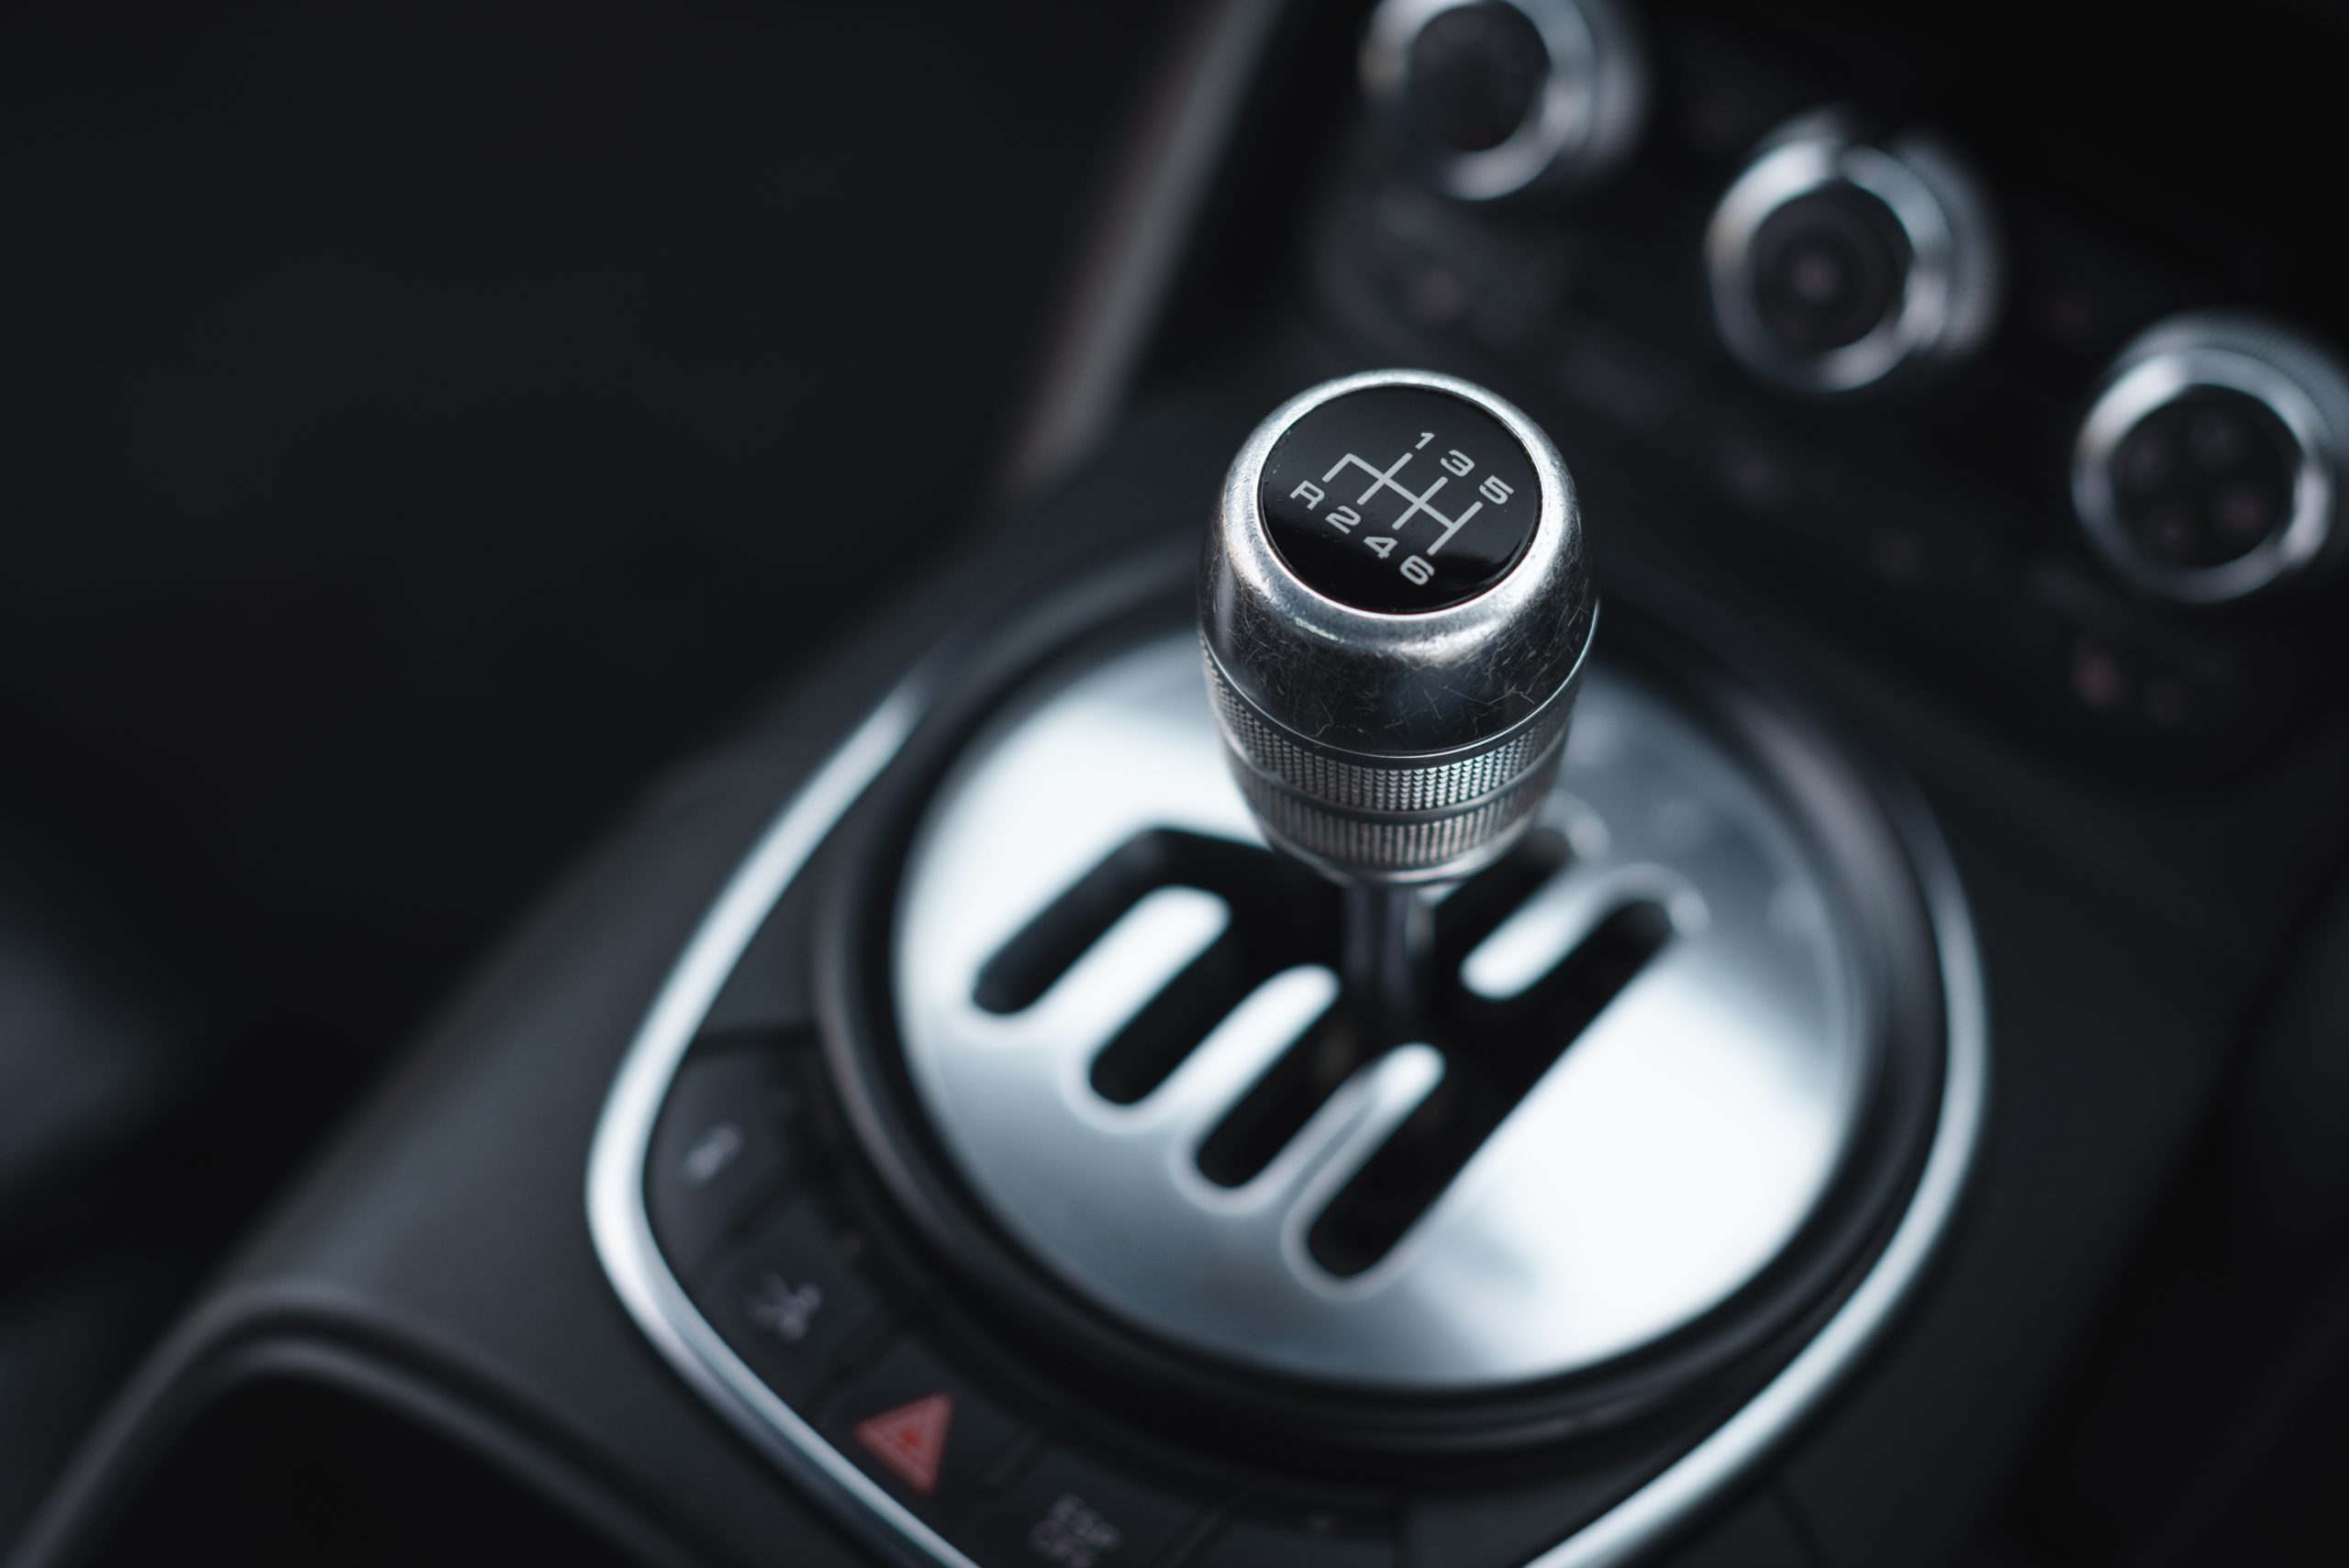 Audi R8 manual gearlever